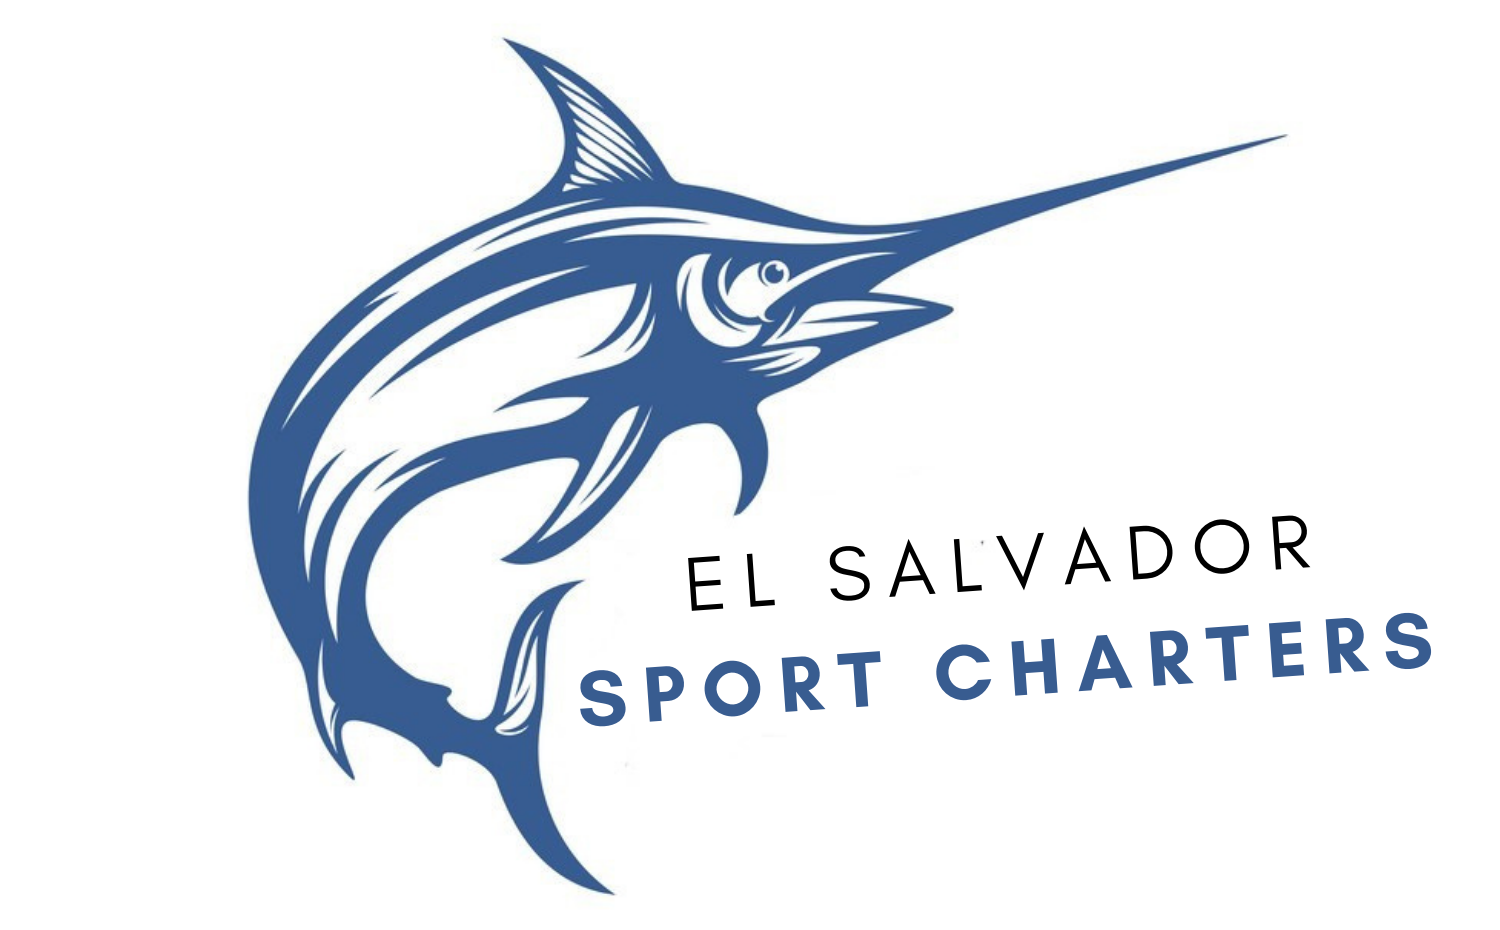 El Salvador Sport Charters